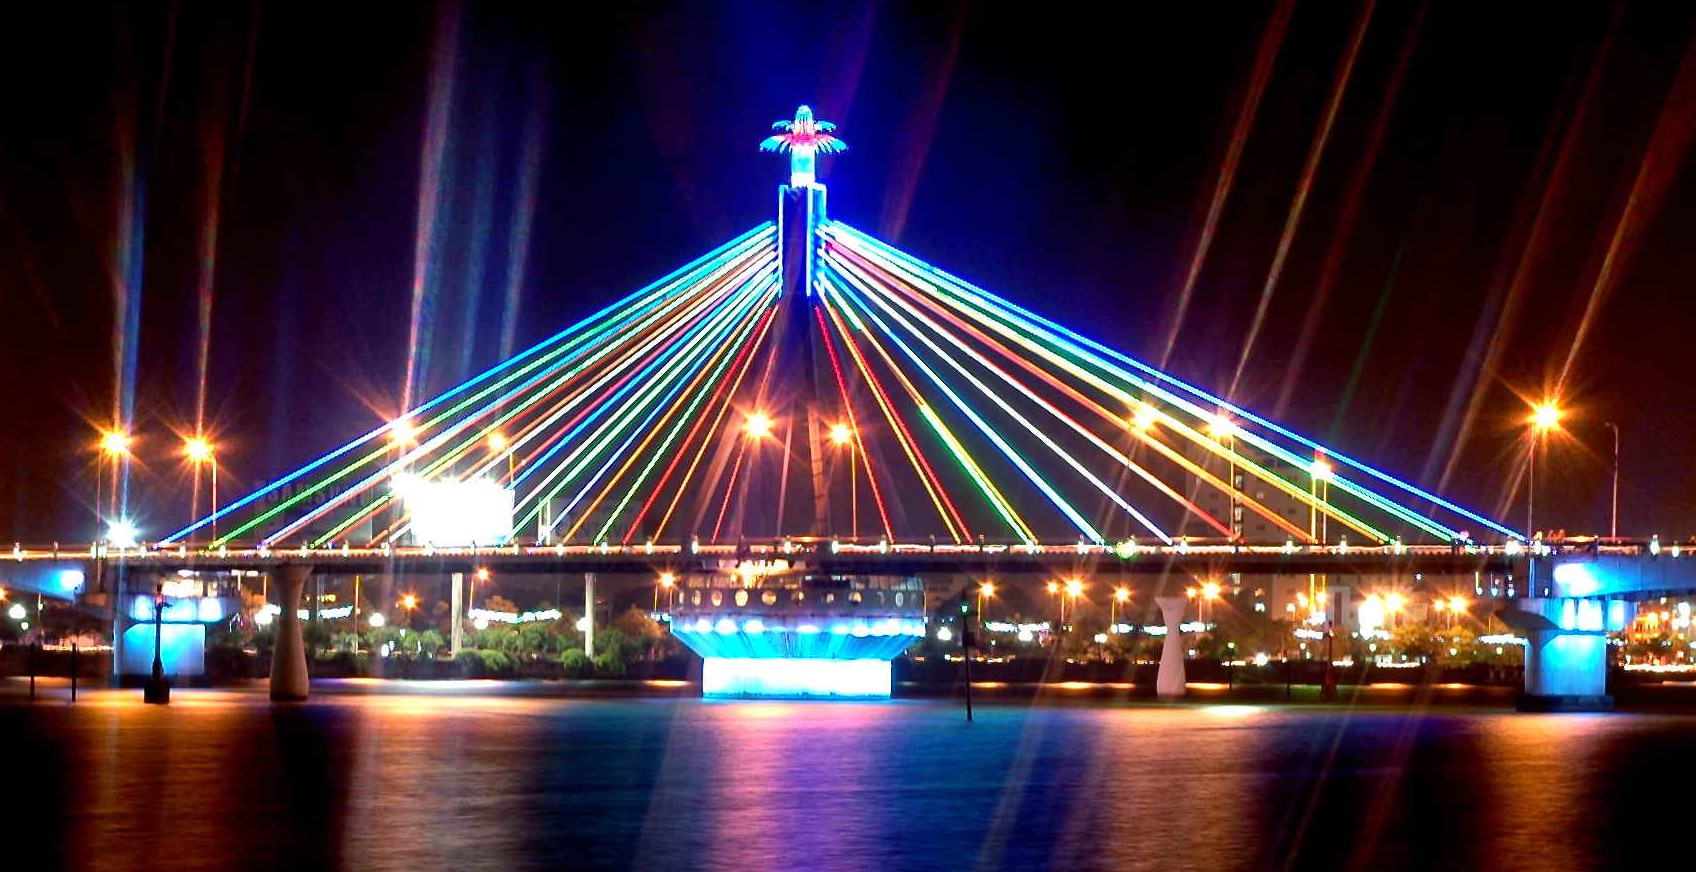 Hình ảnh cầu sông Hàn niềm tự hào của người dân Đà Nẵng về đêm